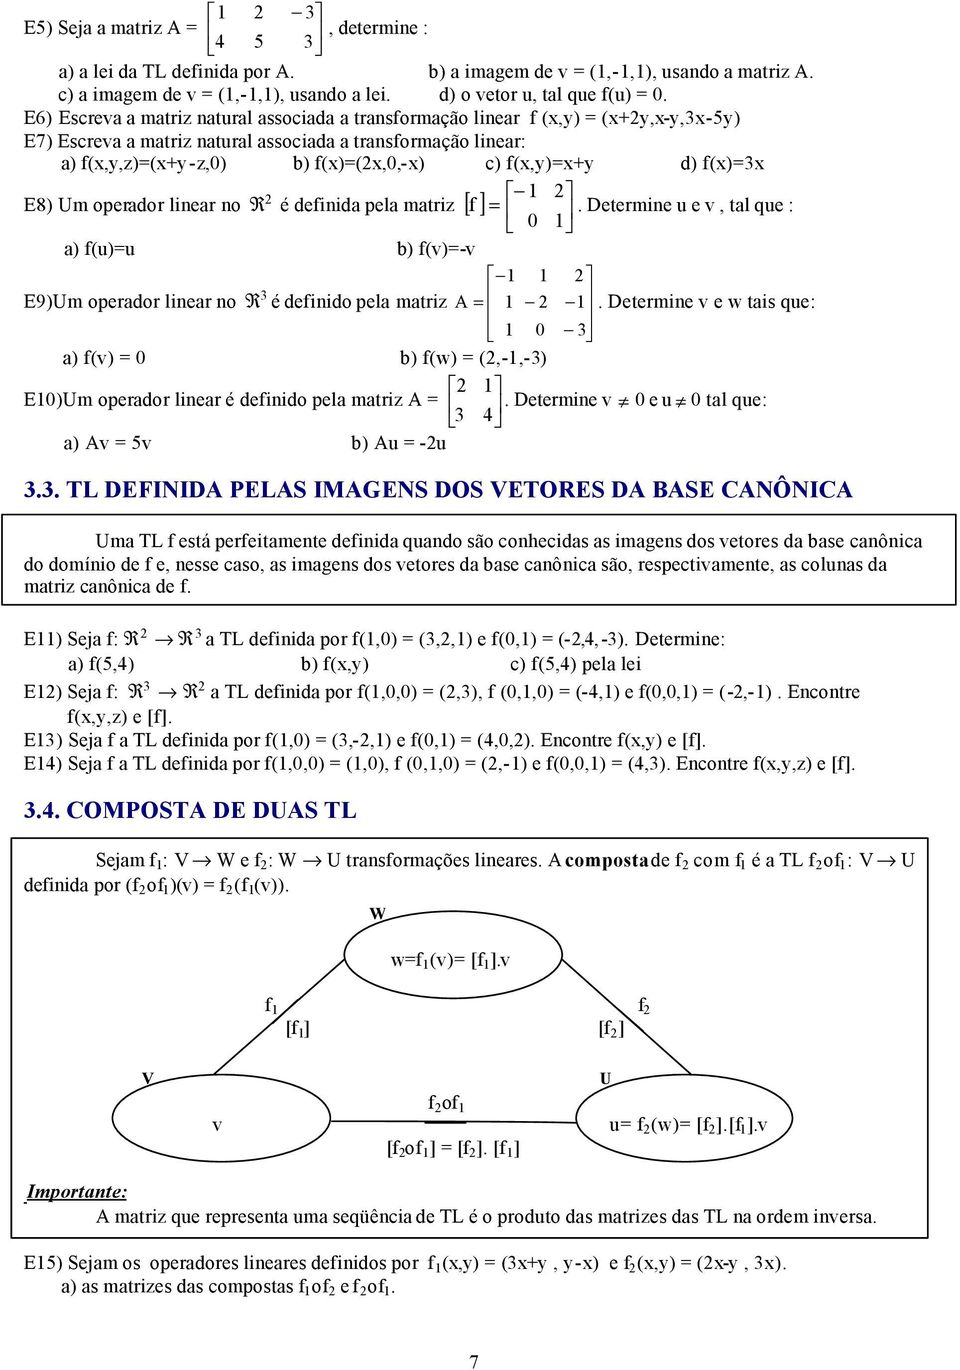 E8) Um operador linear no R é definida pela matriz [ f ] = Determine u e v, tal que : 0 a) f(u)=u b) f(v)=-v E9)Um operador linear no R é definido pela matriz A = Determine v e w tais que: 0 a) f(v)